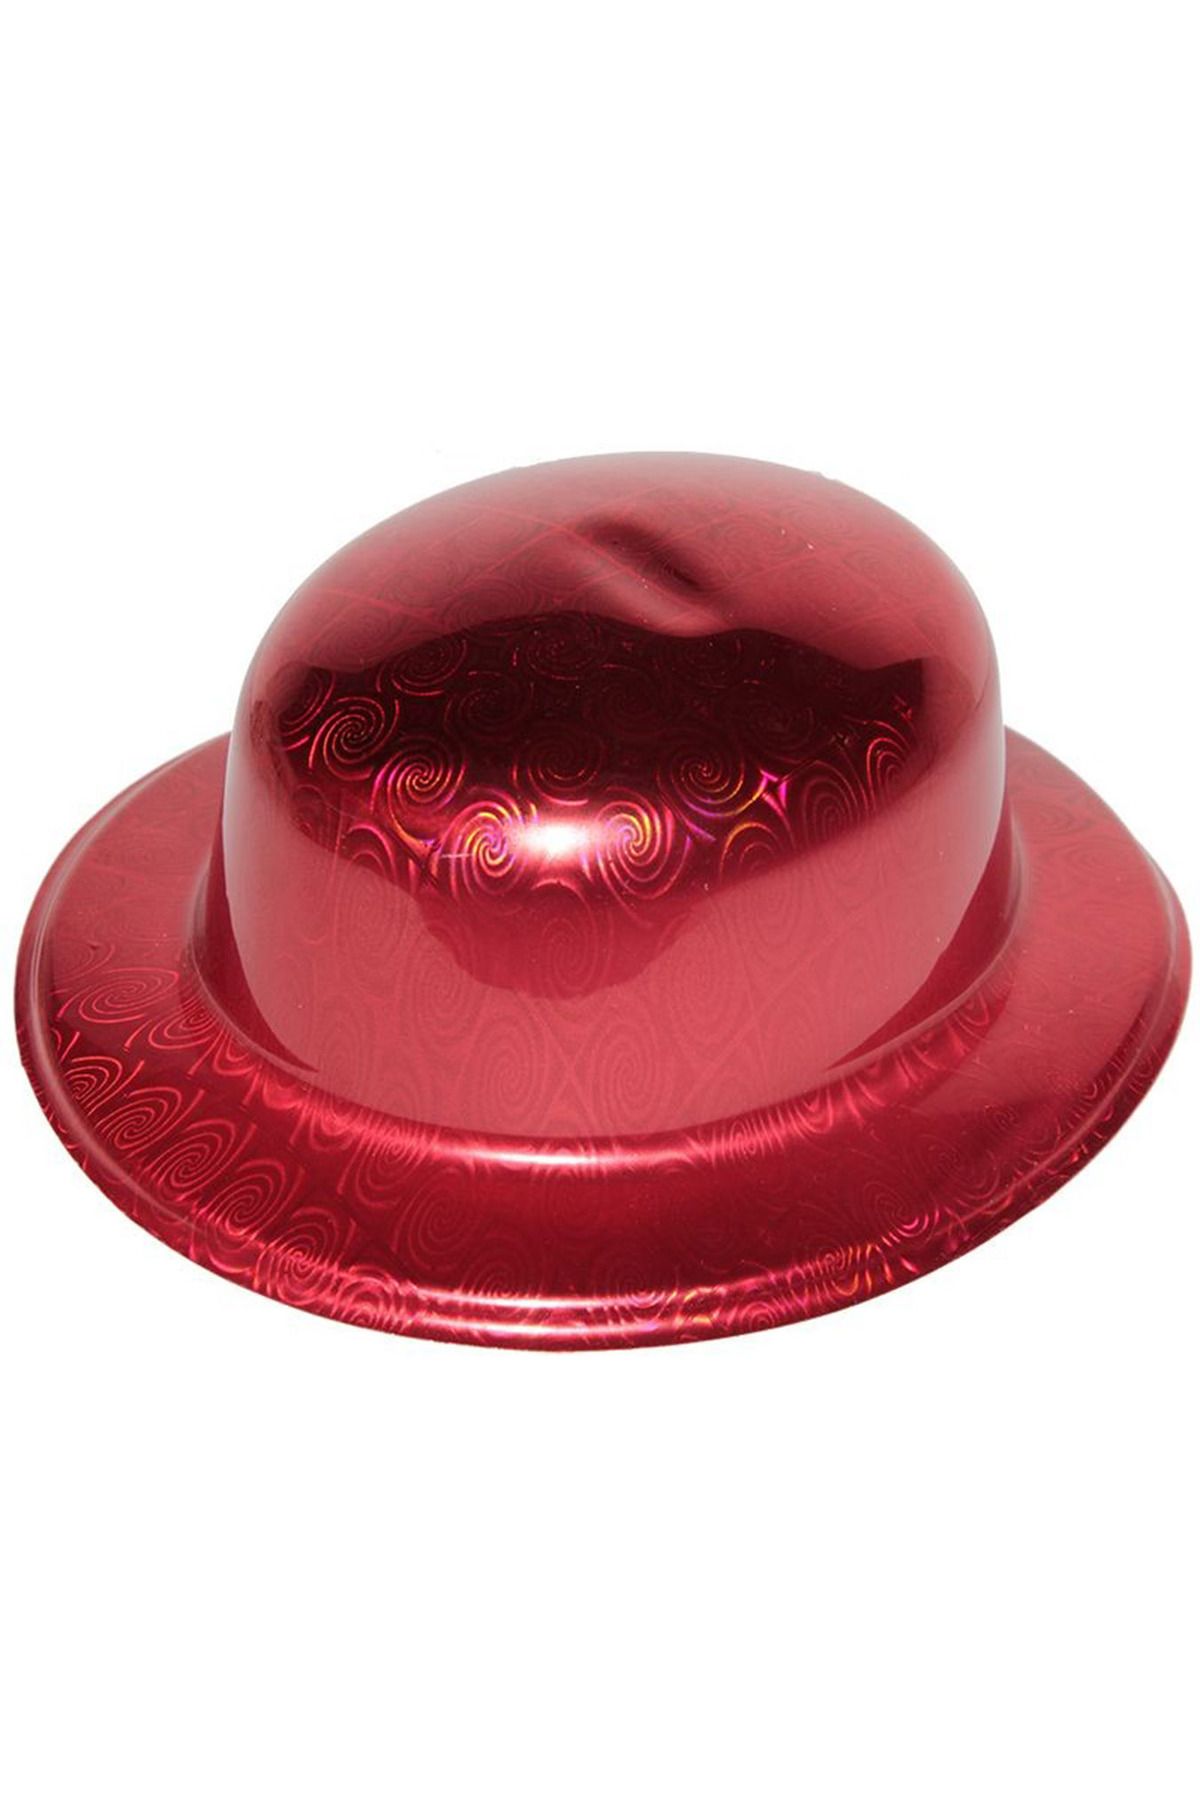 ReilaCos Kırmızı Renk Hologramlı Plastik Yuvarlak Melon 27x24 Cm